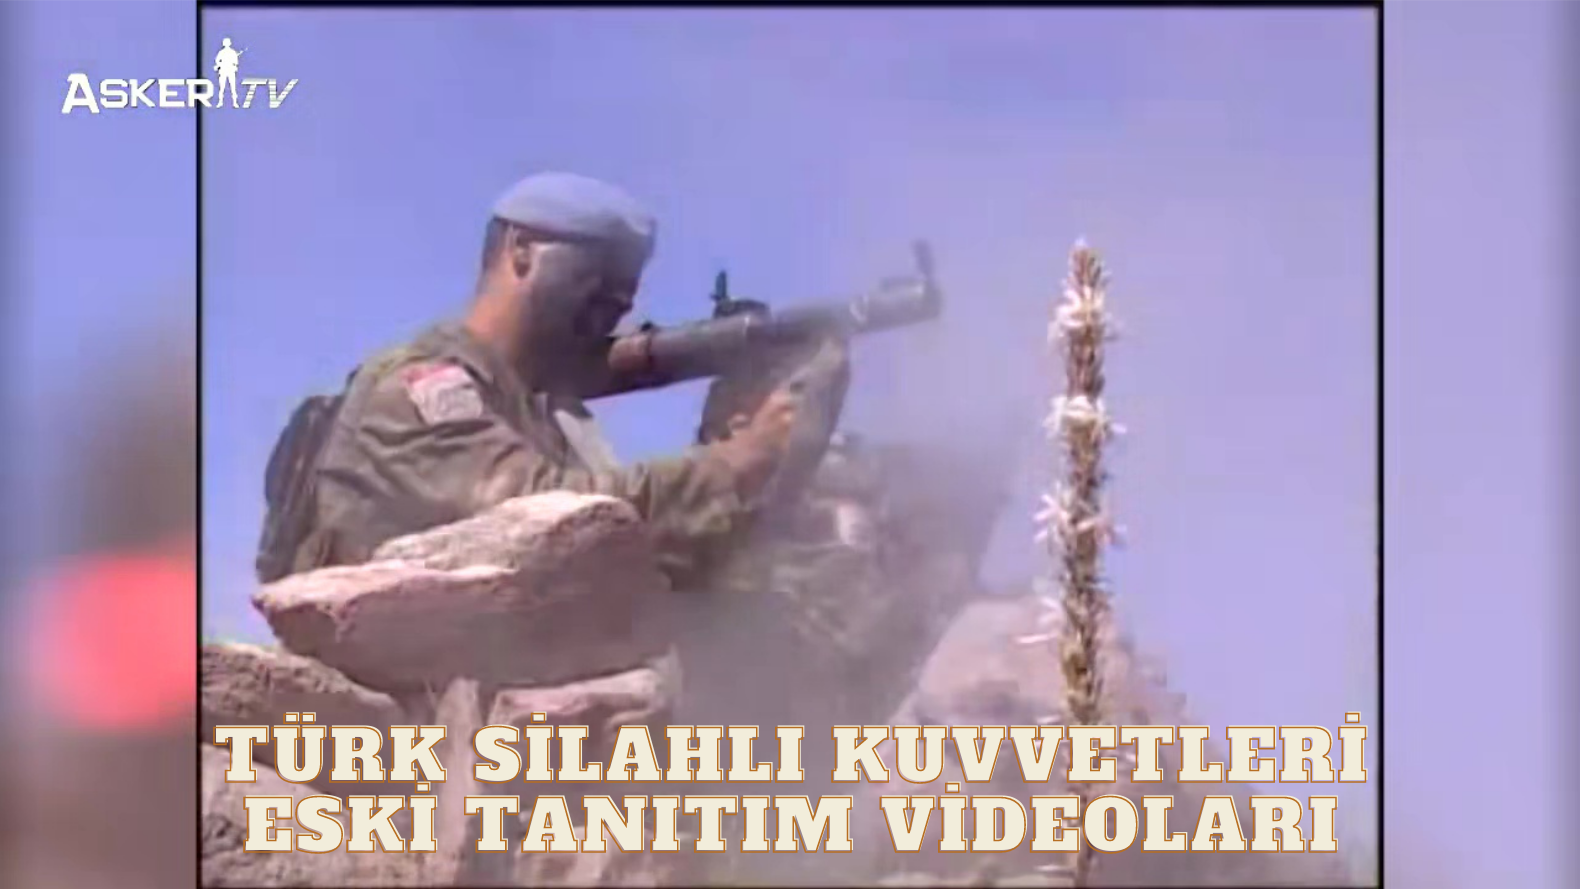 turk-silahli-kuvvetleri-eski-tanitim-videolari